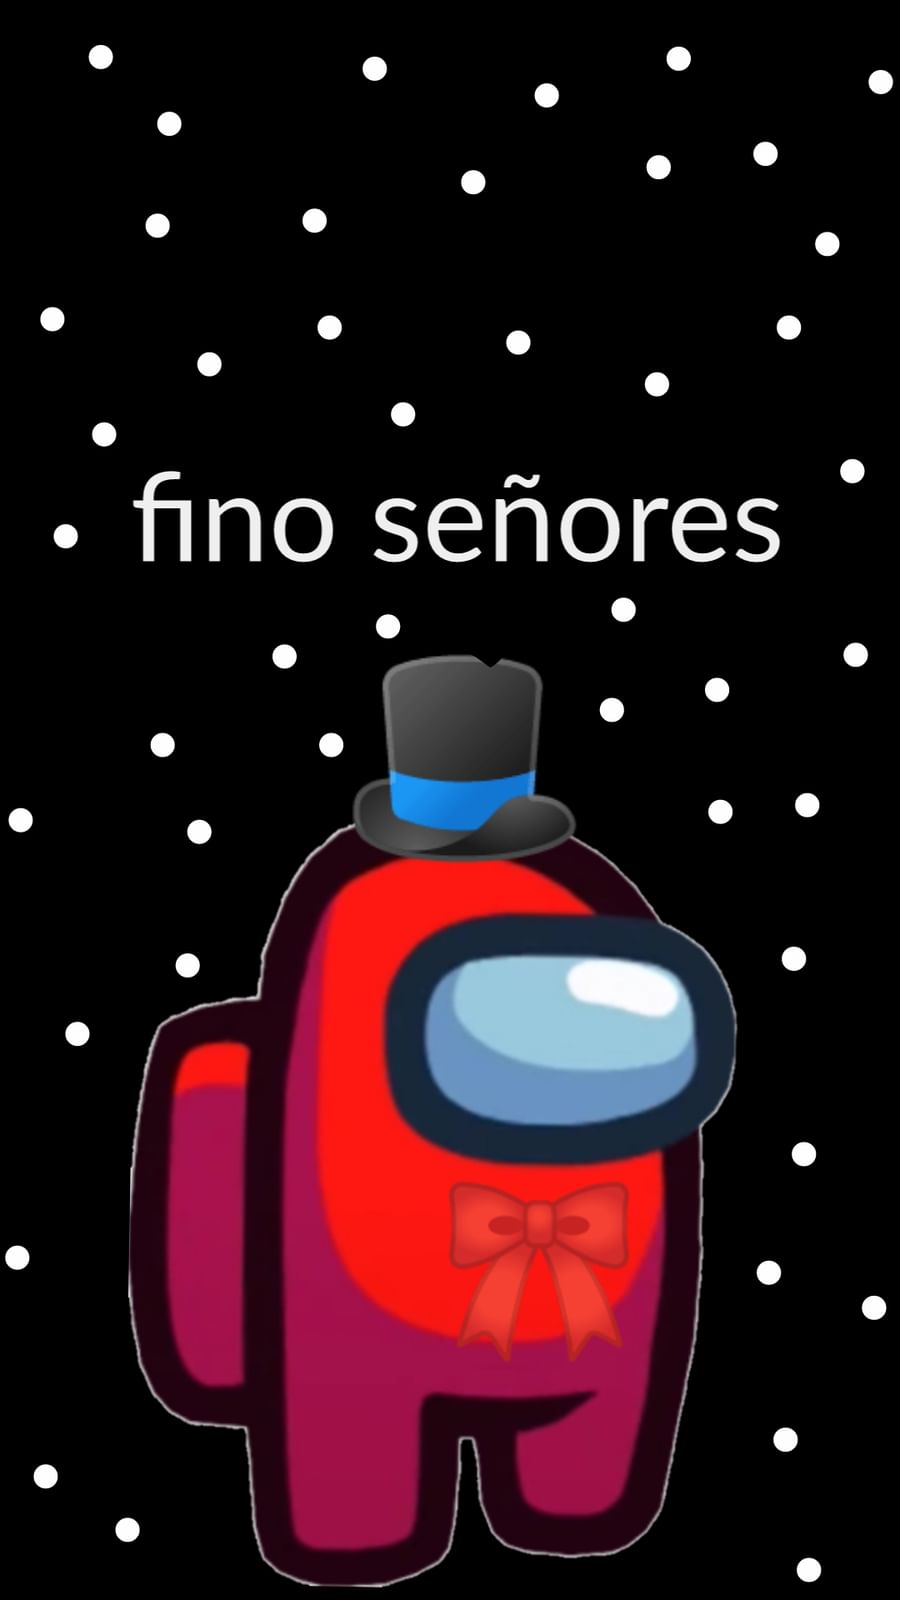 Pokemon Fino senores